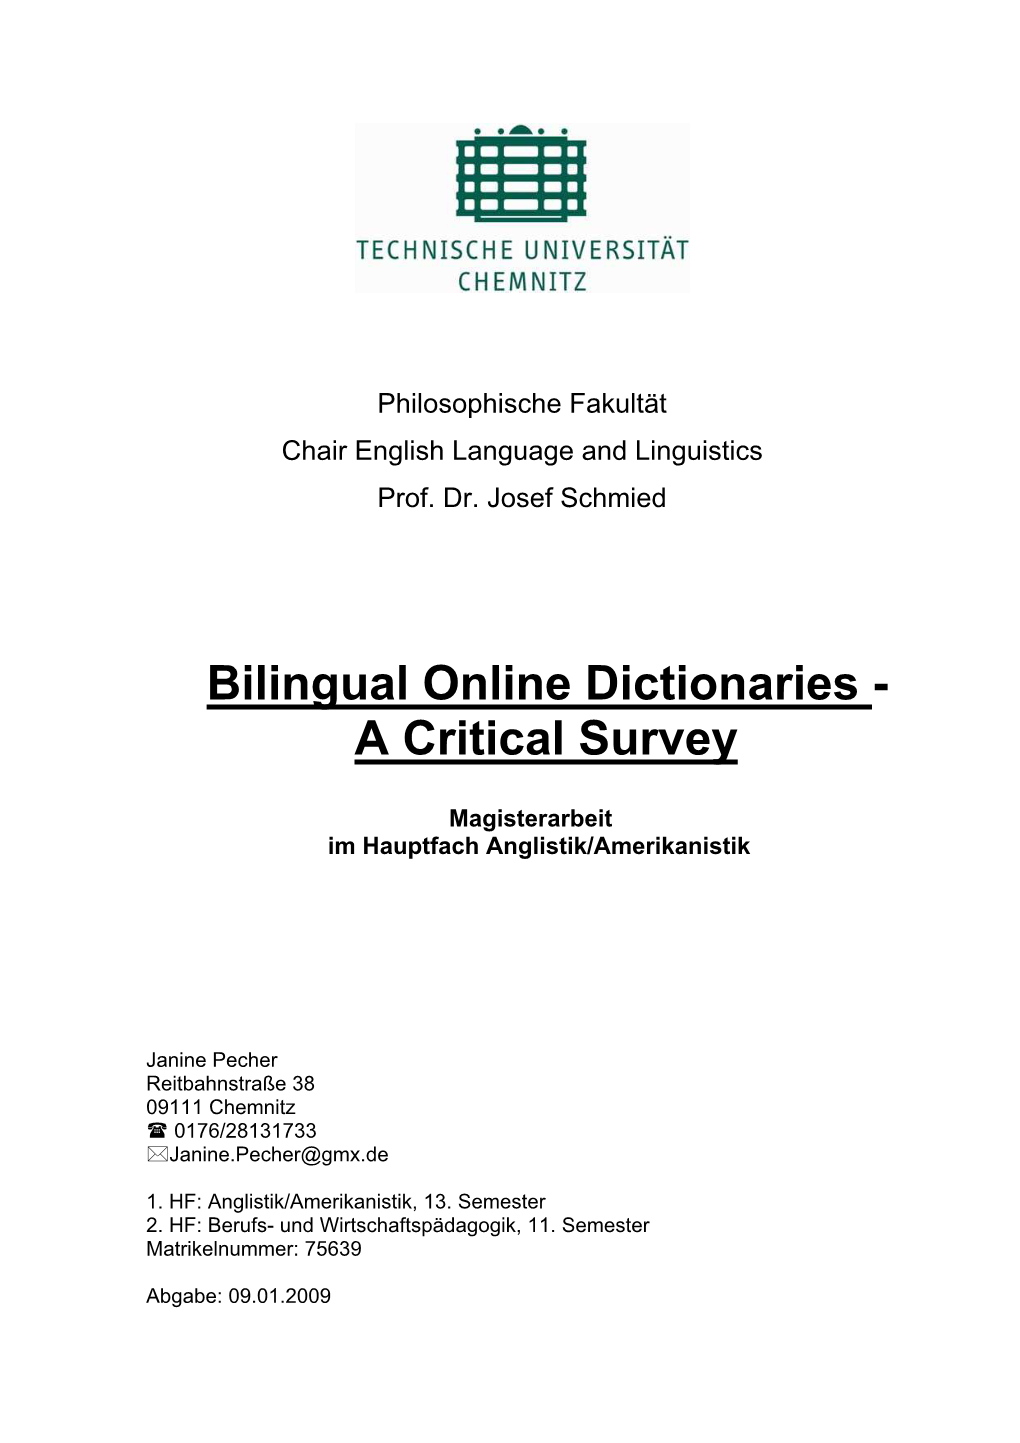 Bilingual Online Dictionaries - a Critical Survey